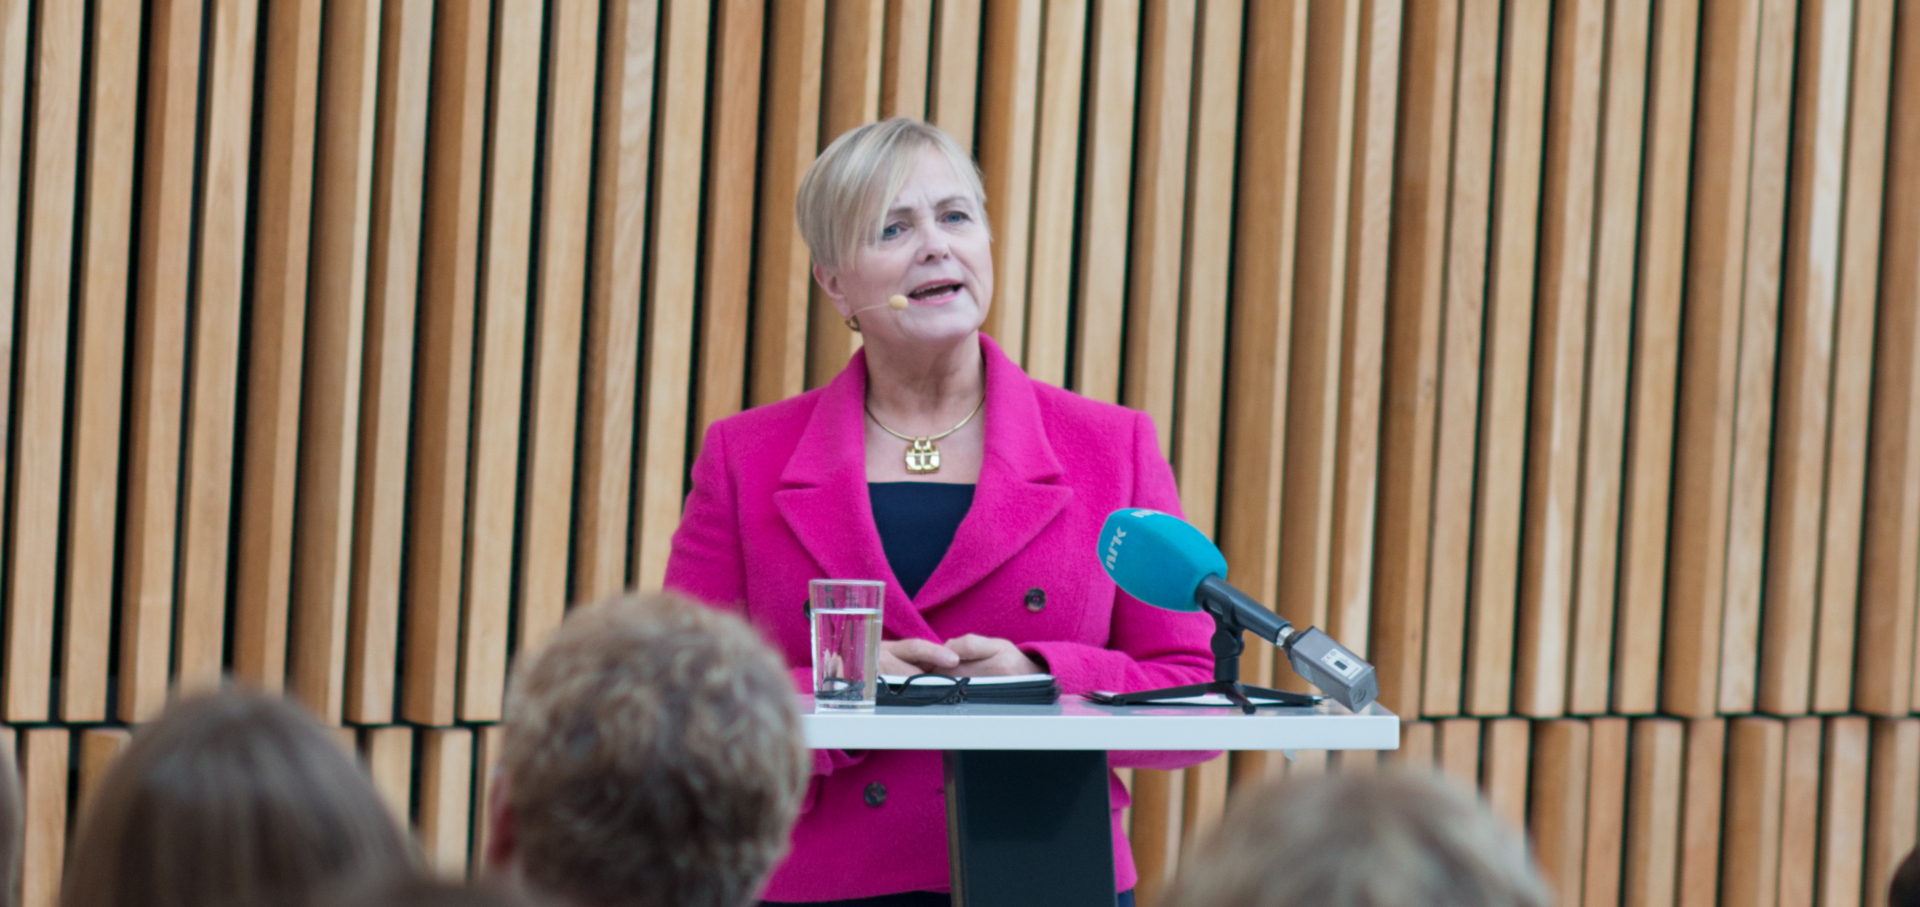 KULTURMINISTEREN: Kulturminister Thorhild Widvey legger idag fram et budsjett på 13 milliarder kroner til kultur. 